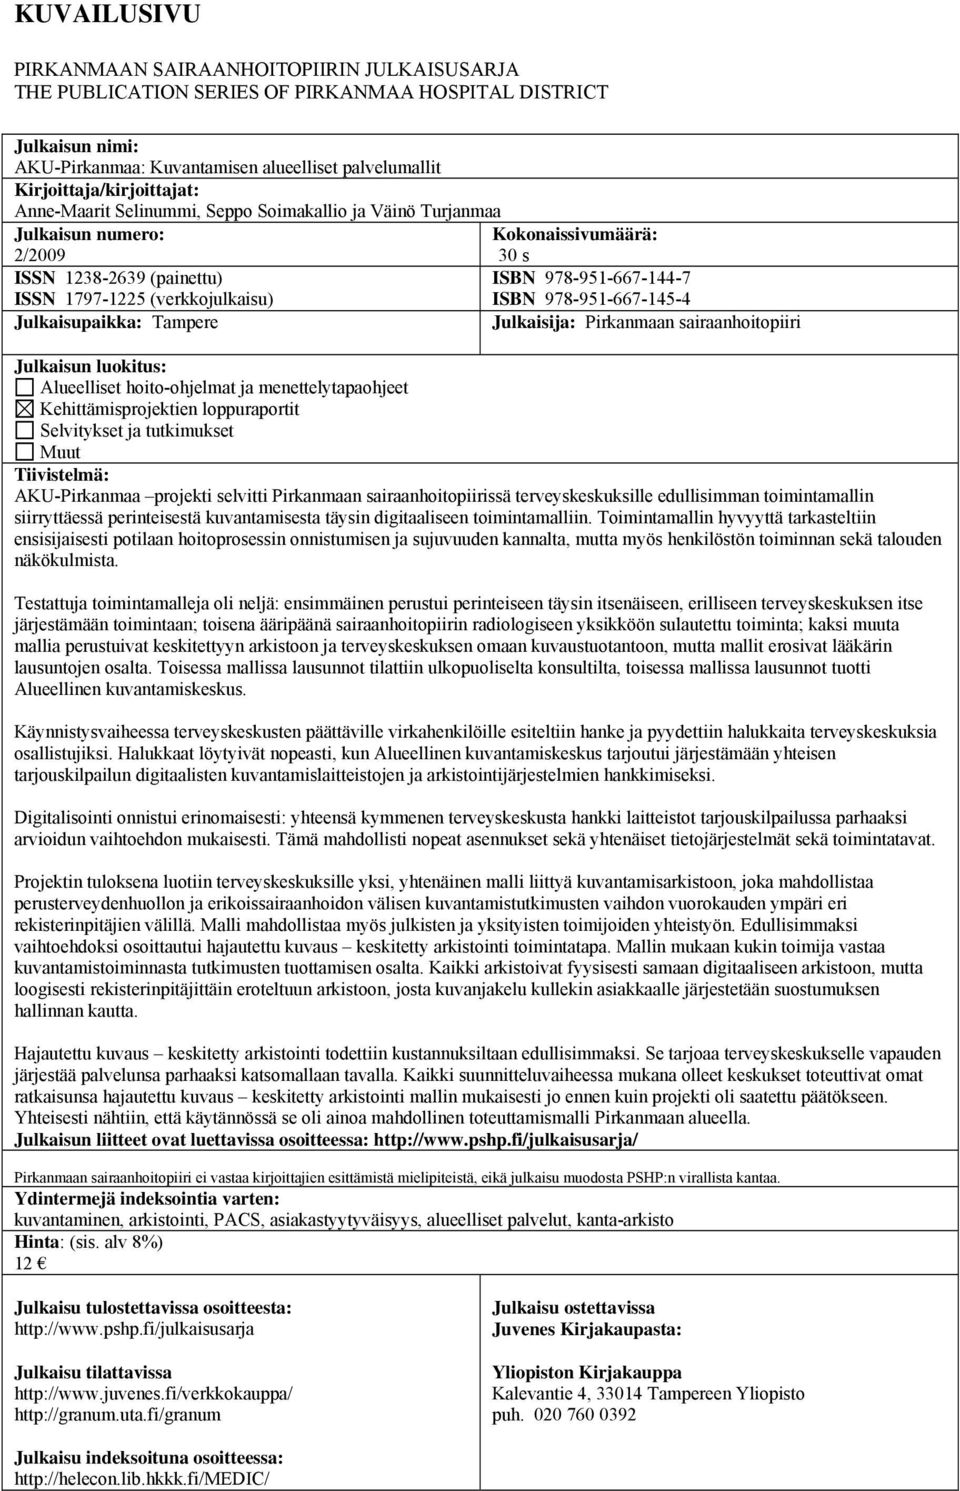 (verkkojulkaisu) ISBN 978-951-667-145-4 Julkaisupaikka: Tampere Julkaisija: Pirkanmaan sairaanhoitopiiri Julkaisun luokitus: Alueelliset hoito-ohjelmat ja menettelytapaohjeet Kehittämisprojektien